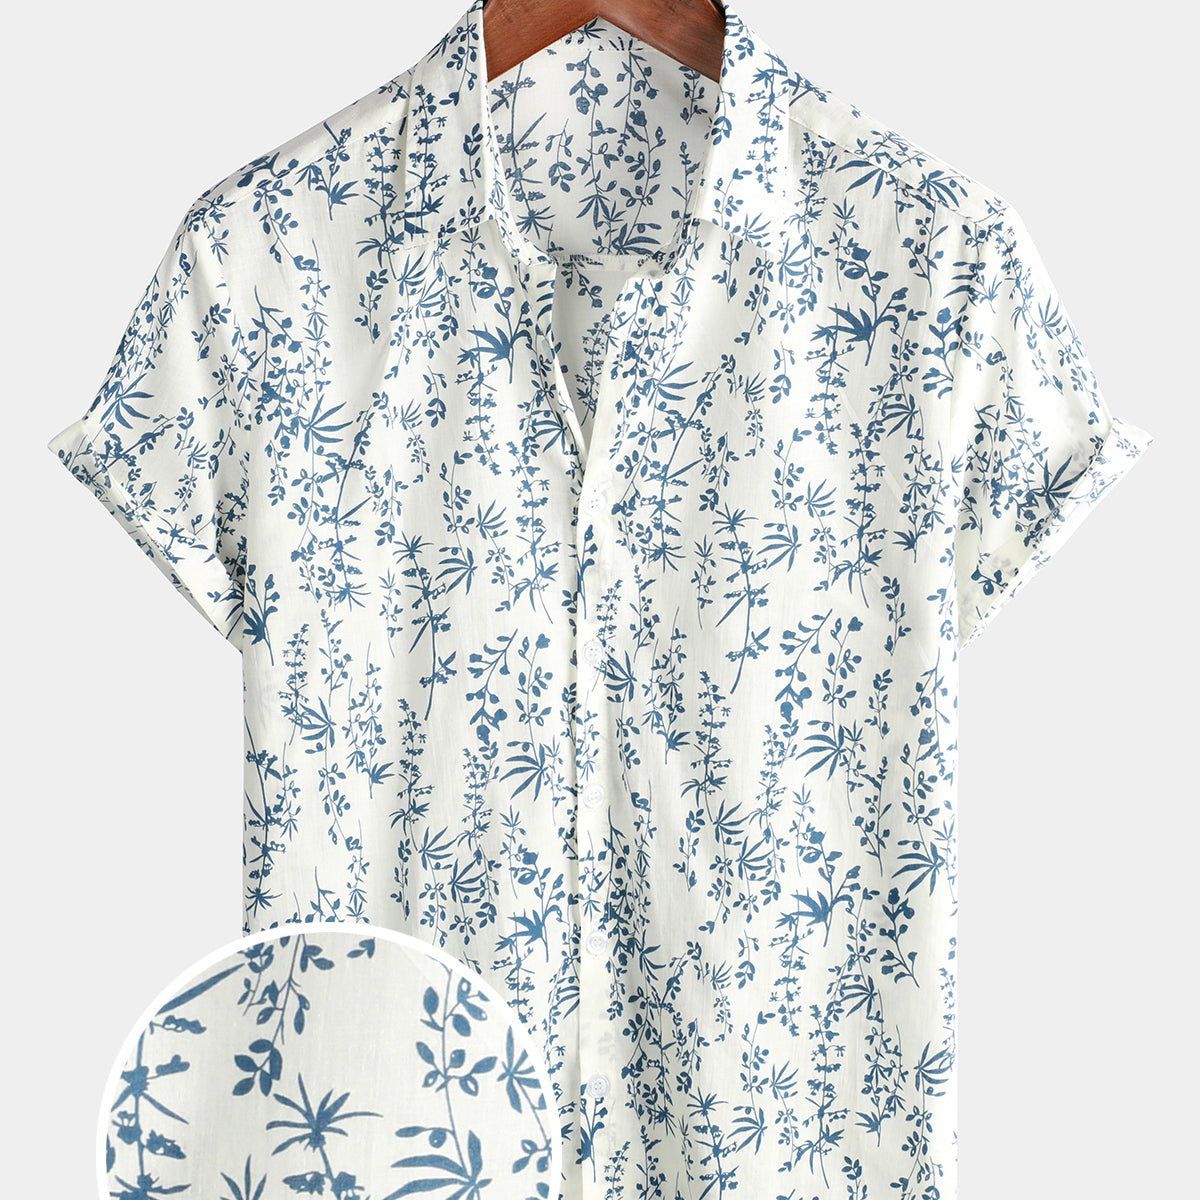 Camisa de manga corta de verano con botones florales de algodón para hombre